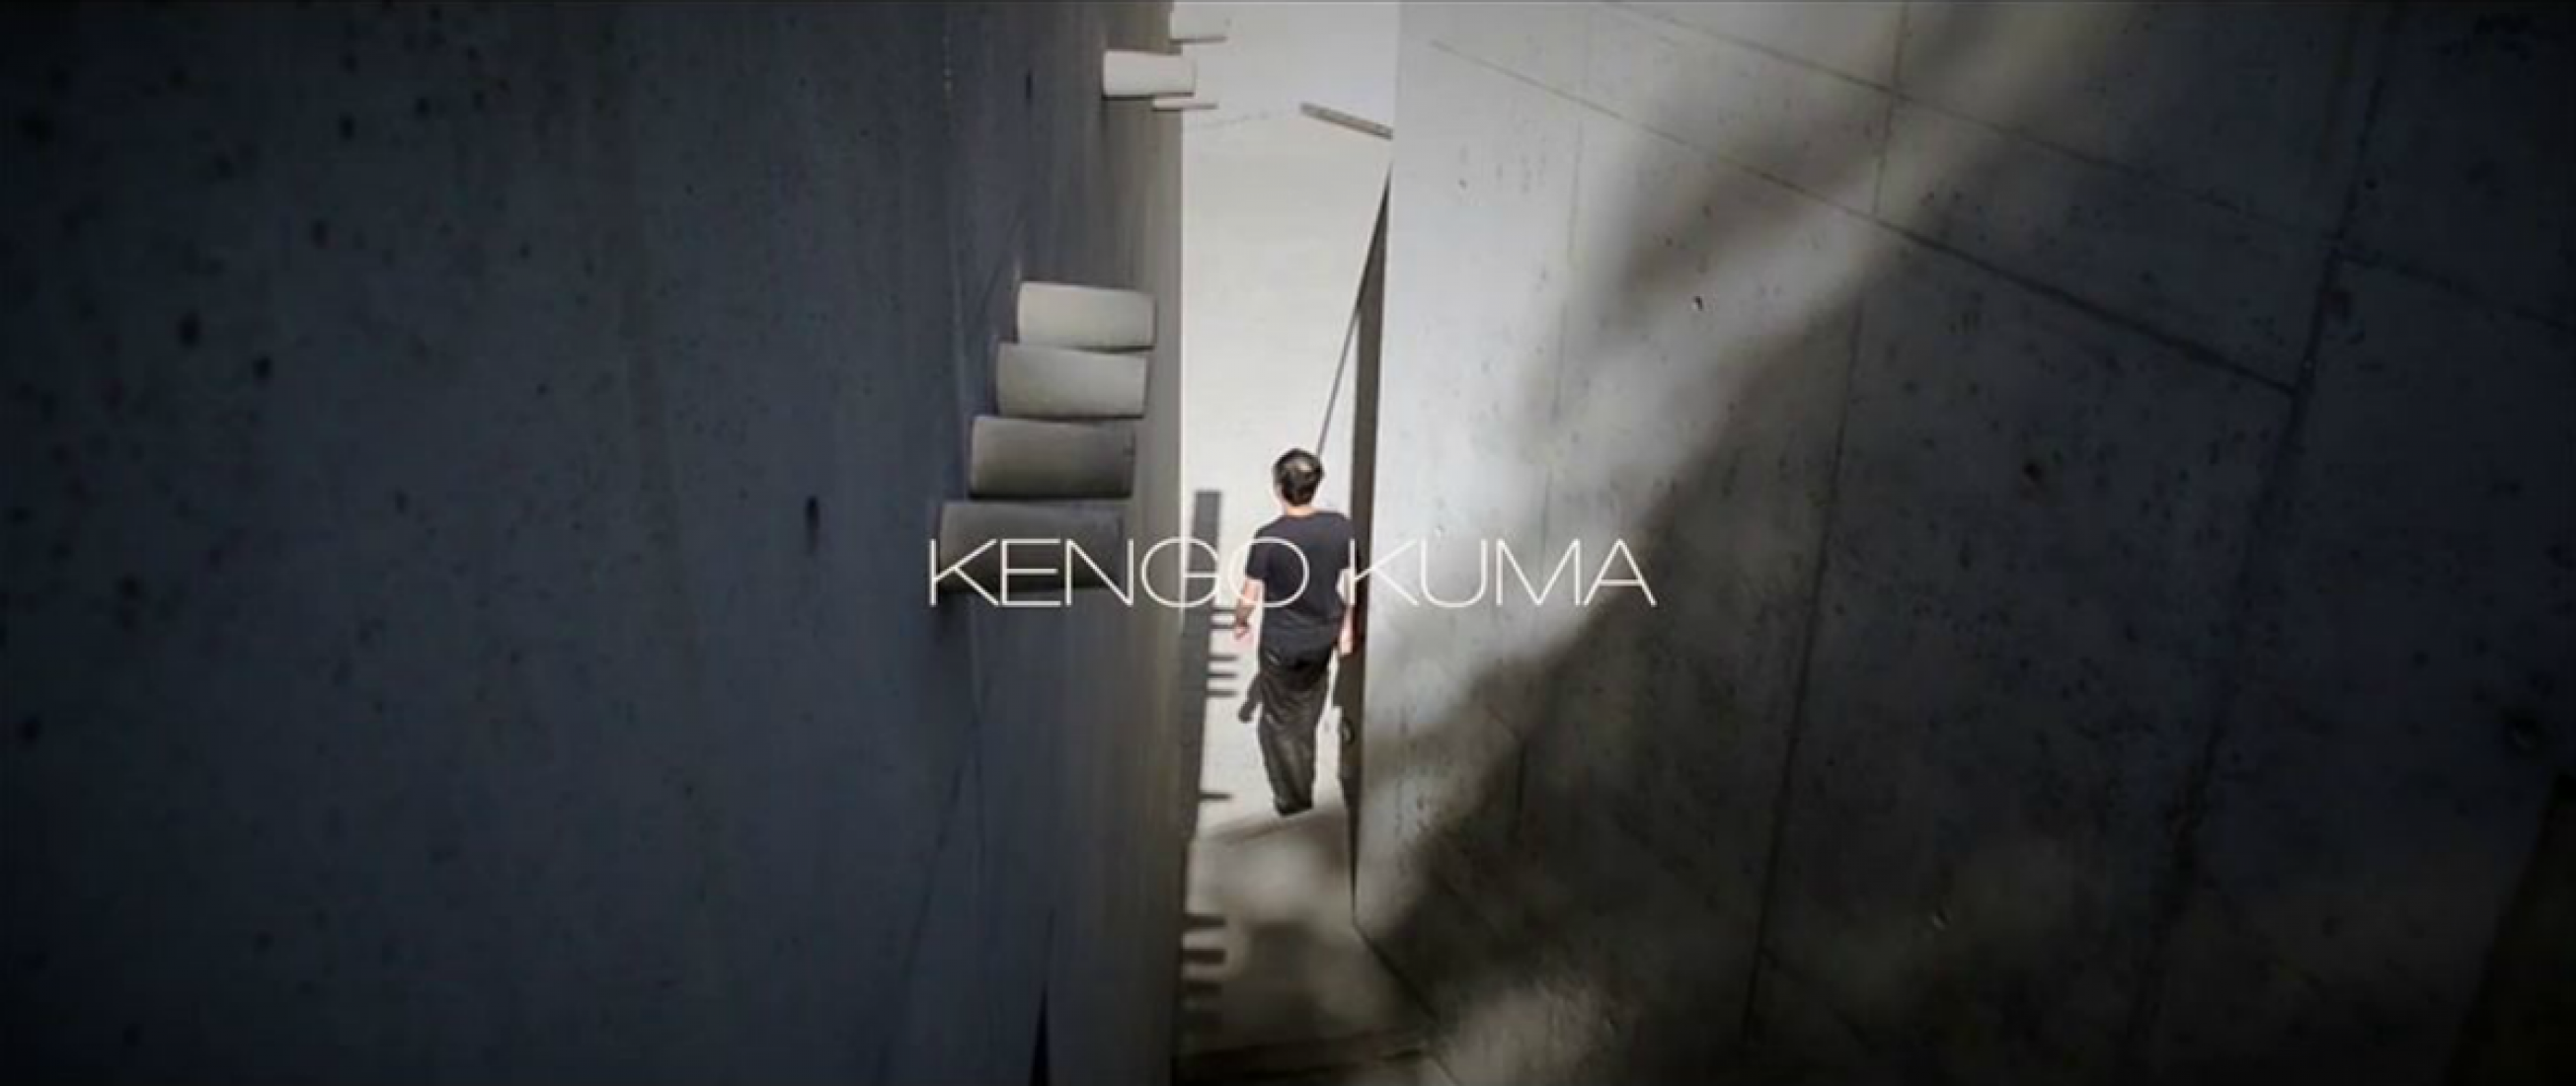 Knowing Kuma by Omar Kakar. 